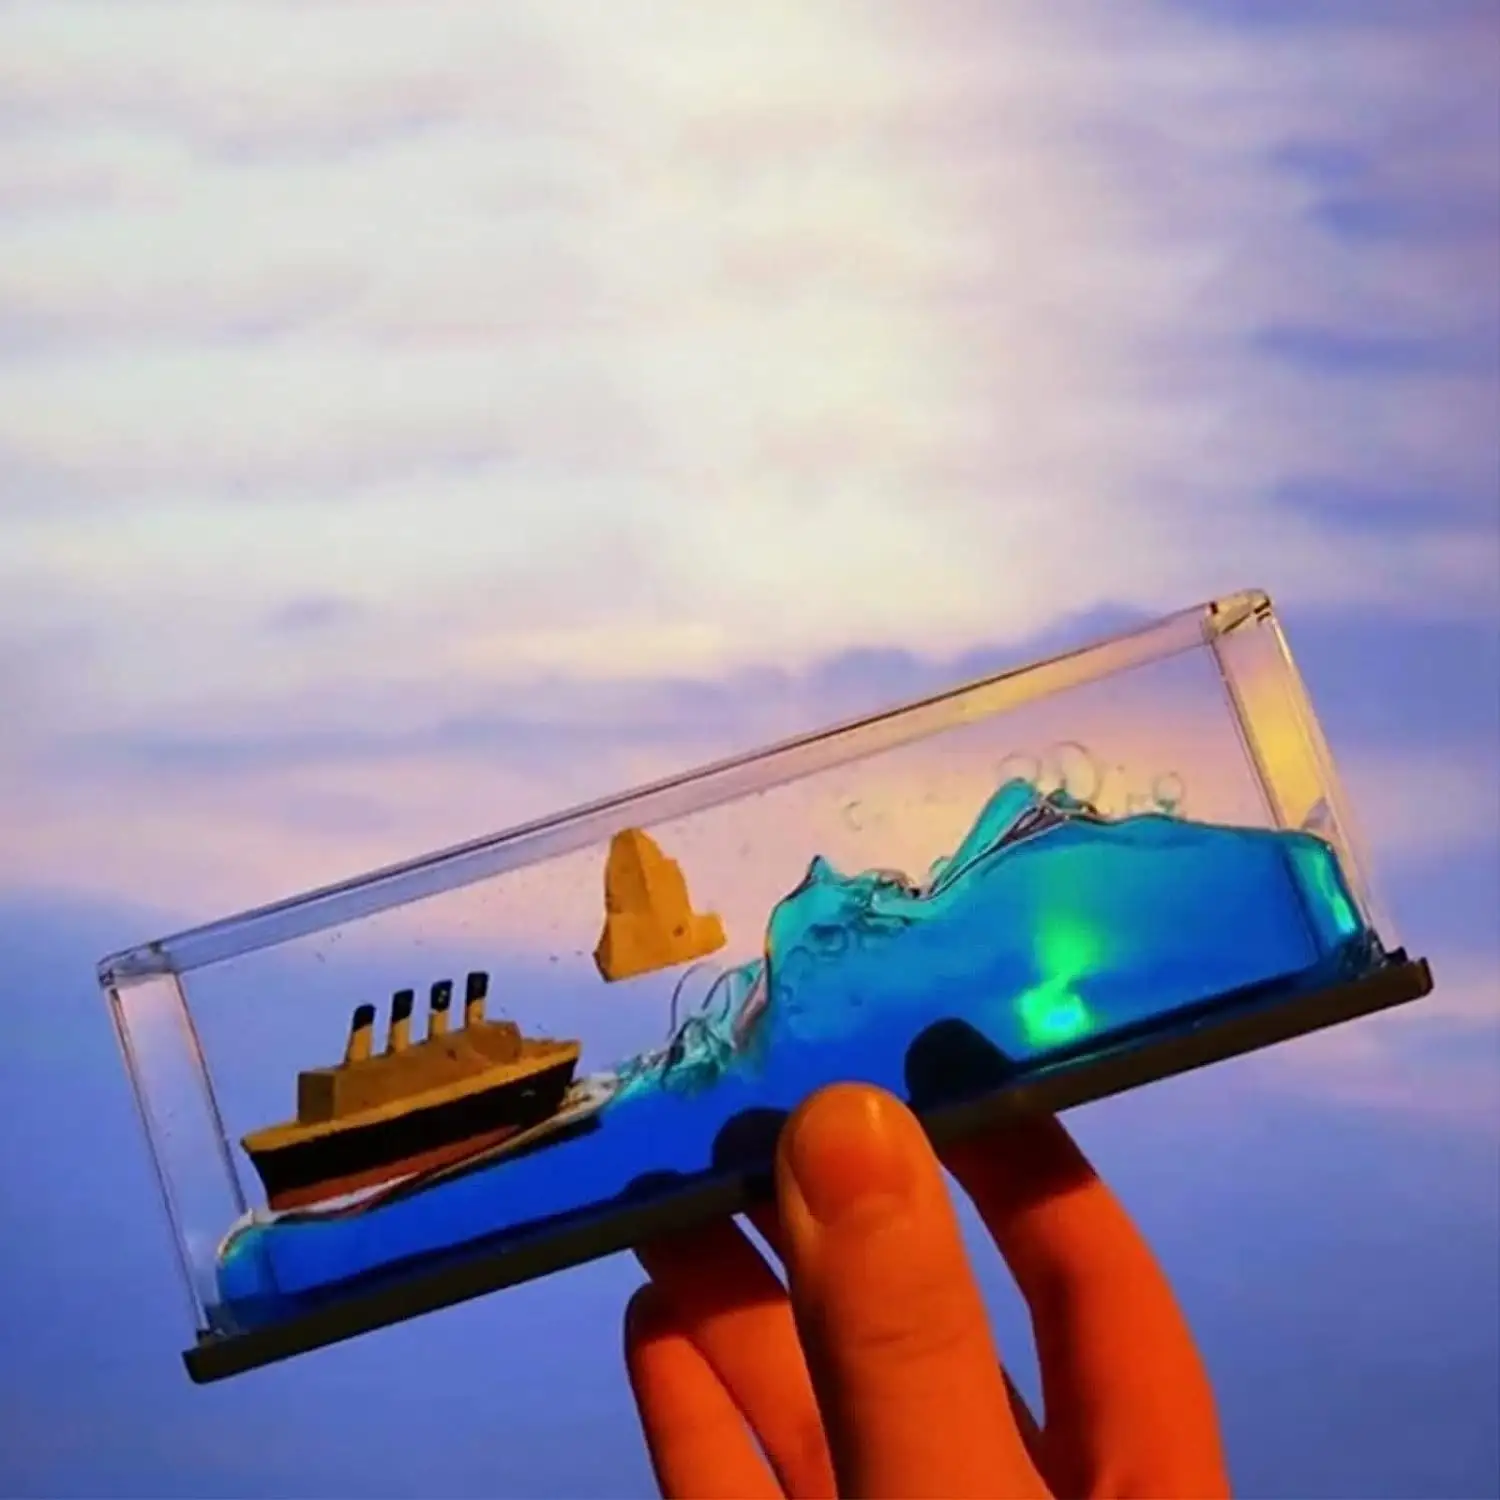 ספינת תענוגות מצב נוזל בקבוק הספינה מודל קישוט הבית אקריליק קישוט בית אקריליק קישוט אירופה סירה פלסטיק כדור צבעוני & גלובוס